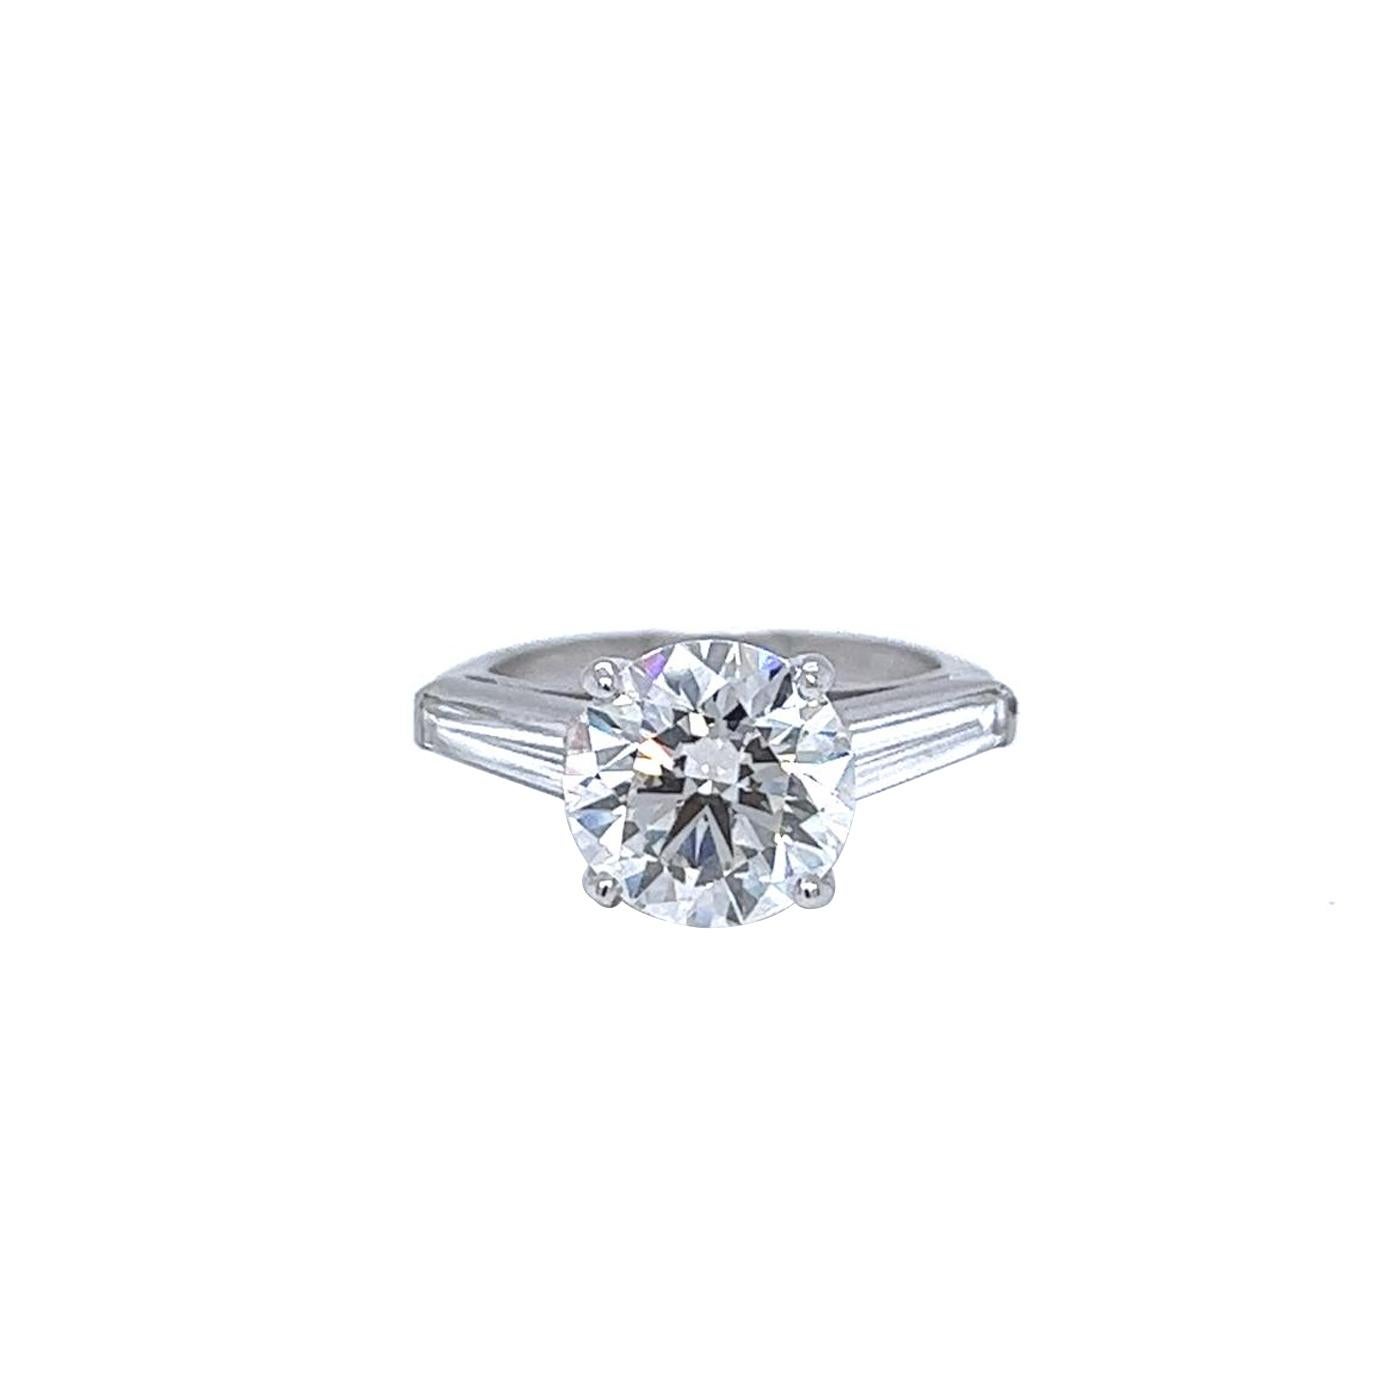 Setzen Sie ein Zeichen mit diesem atemberaubenden Ring, der mit einem runden Diamanten von 3,61 Karat J/VS1 besetzt ist. Der Ring ist außerdem mit 1.15 Karat Diamanten in Baguetteform besetzt, die für noch mehr Glanz und Funkeln sorgen. Der Ring